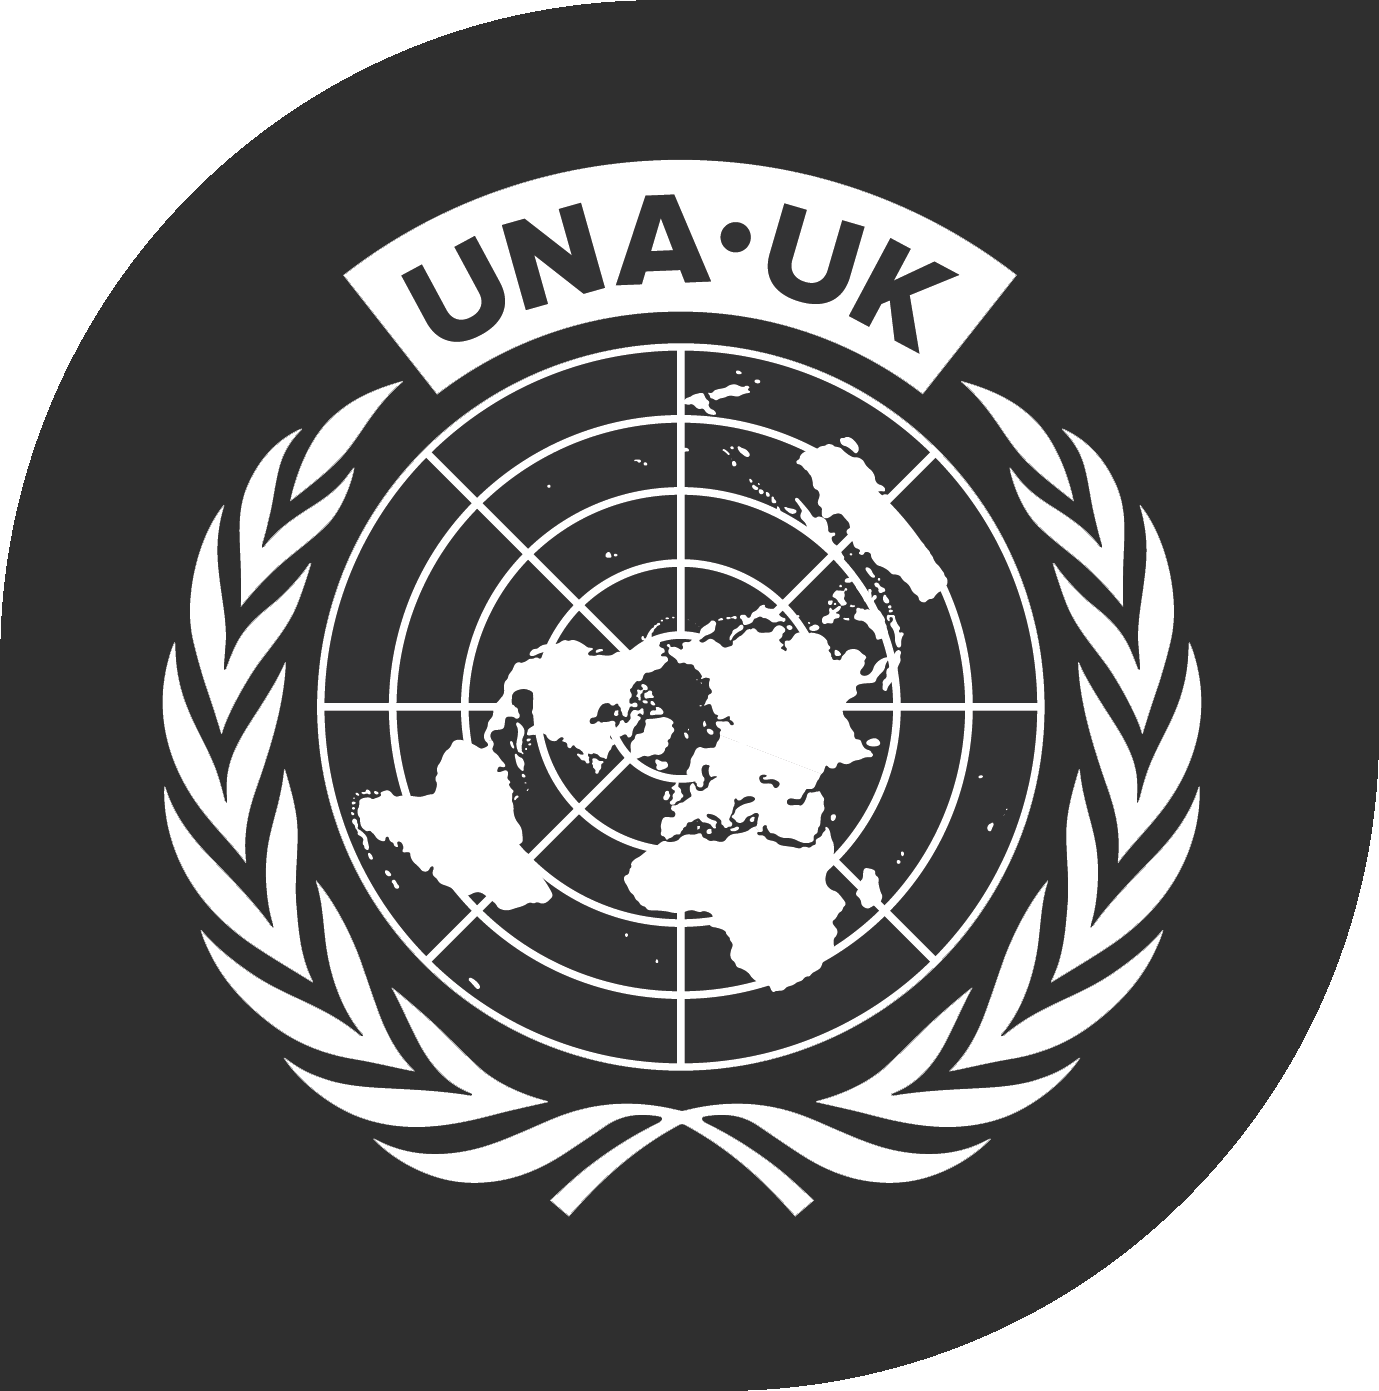 UNA_UK logo